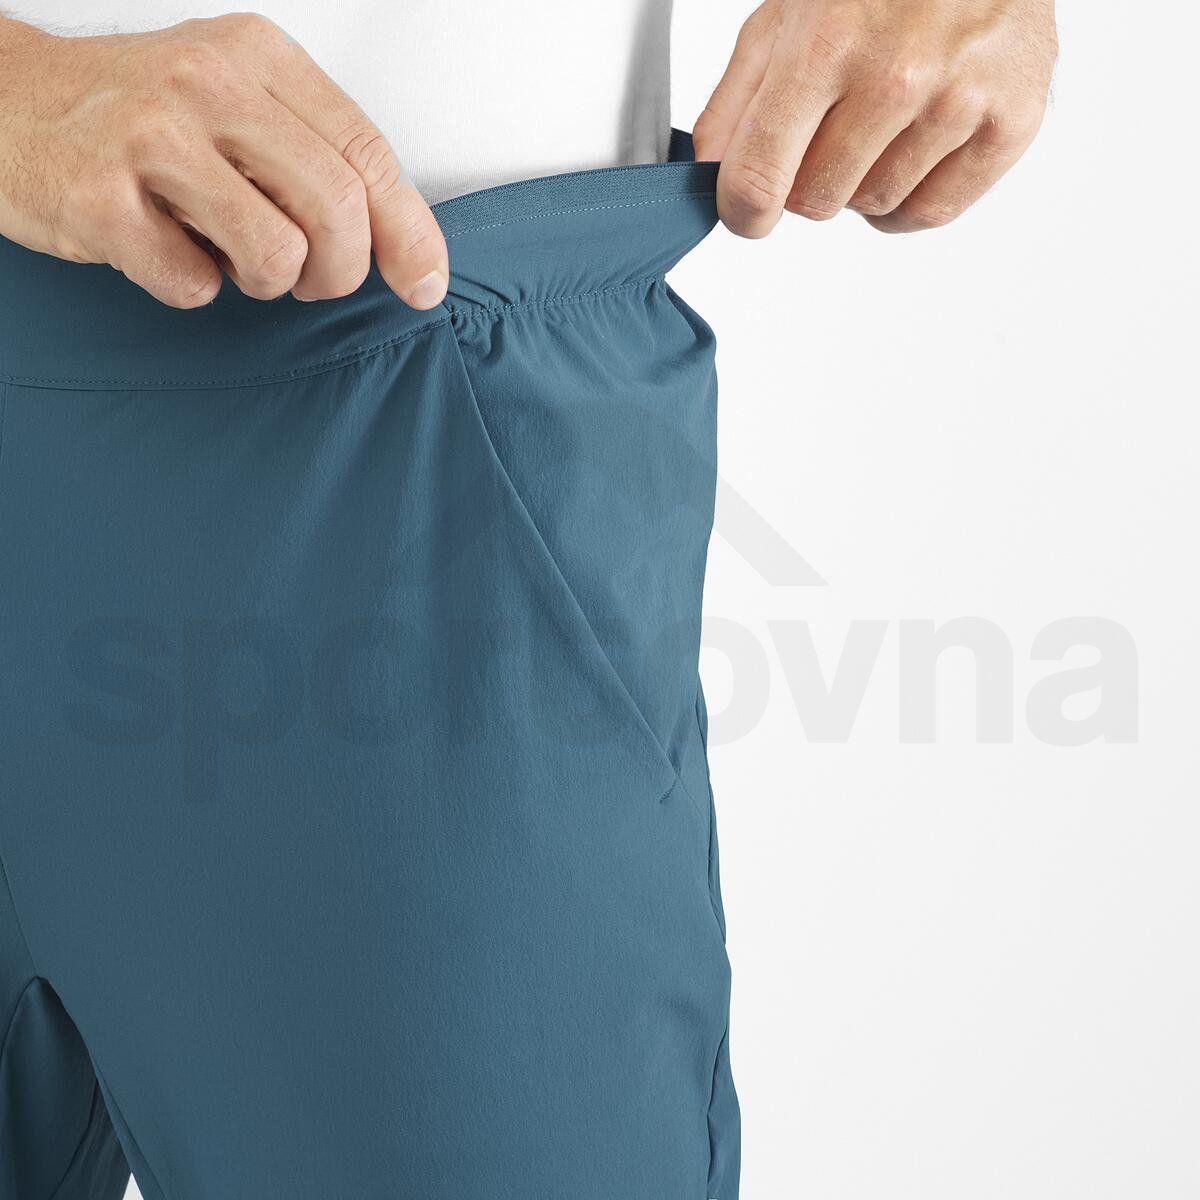 Kalhoty Salomon Wayfarer Ease Pants M - modrá